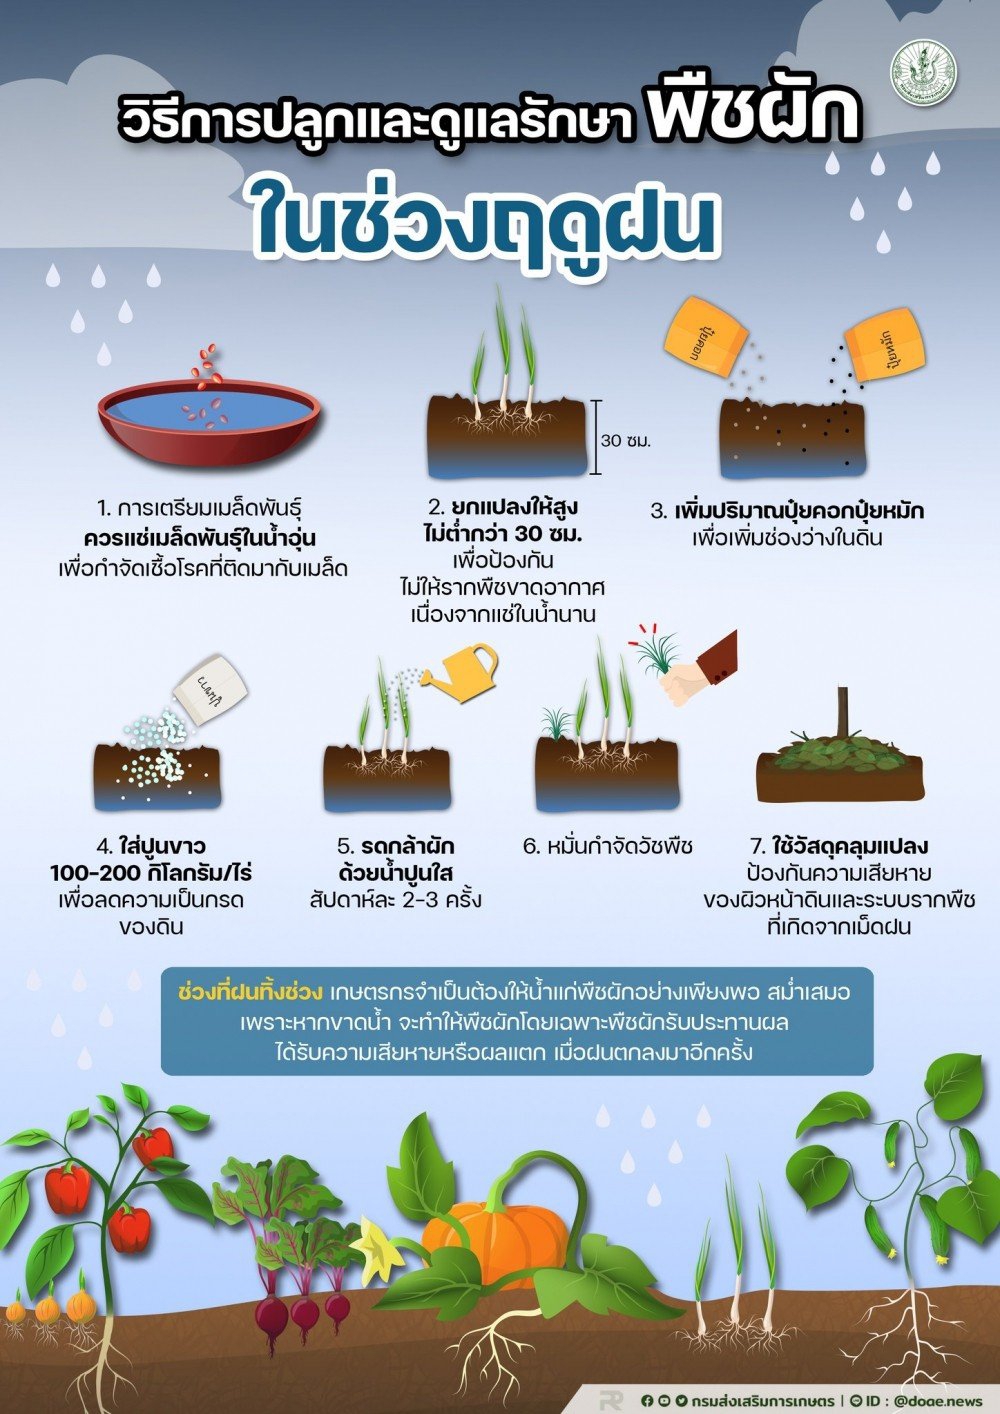 วิธีการปลูกและดูแลรักษาพืชผัก ในช่วงฤดูฝน